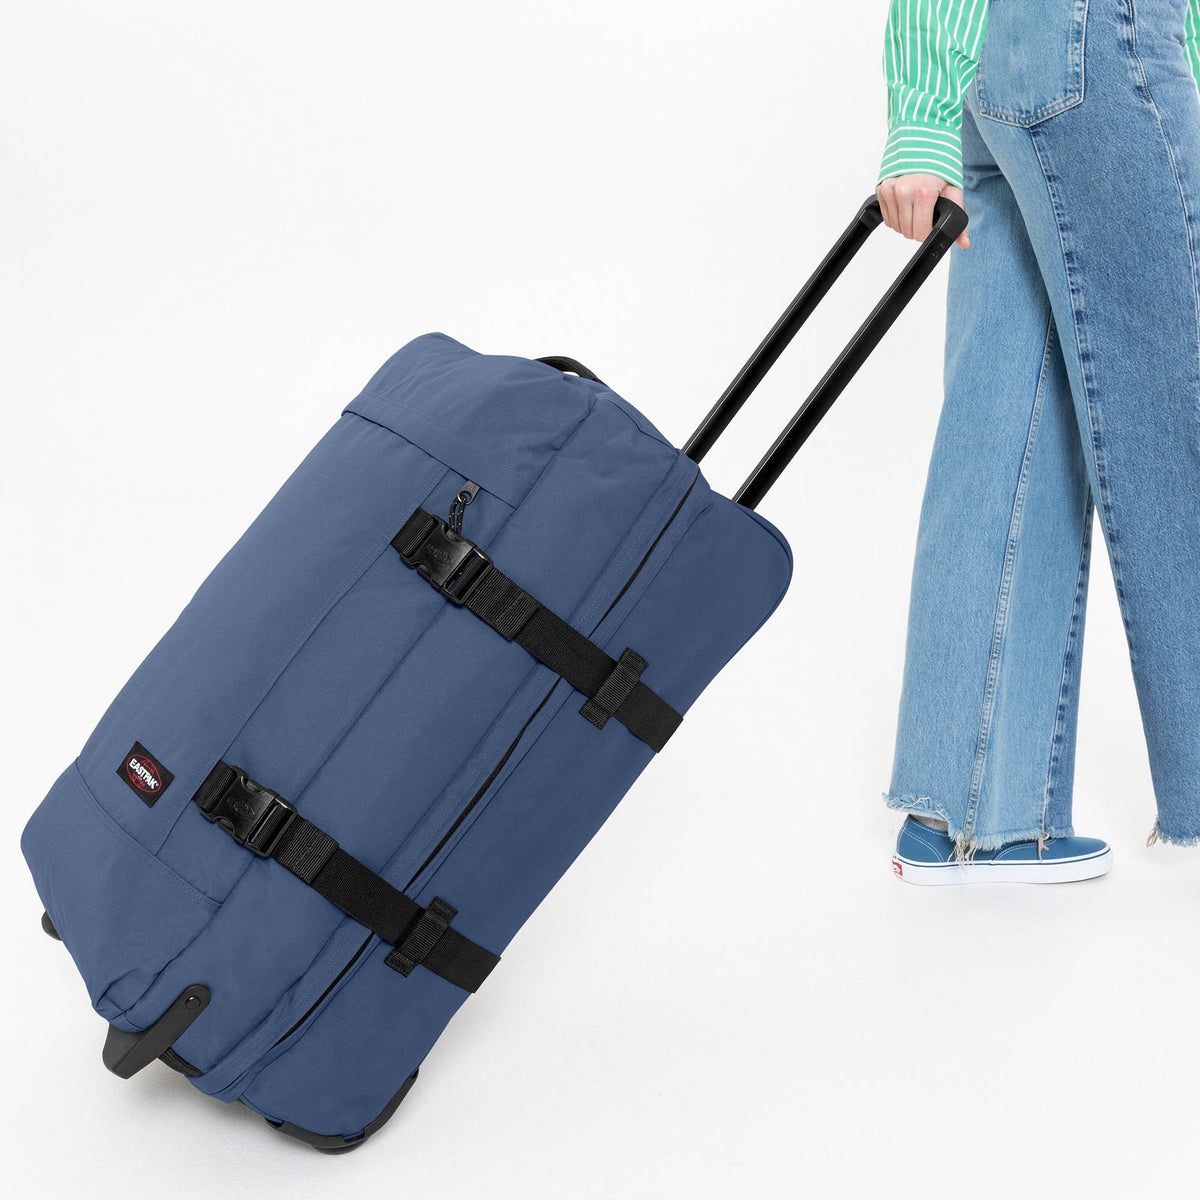 Eastpak Tranverz M Suitcase - Powder Pilot